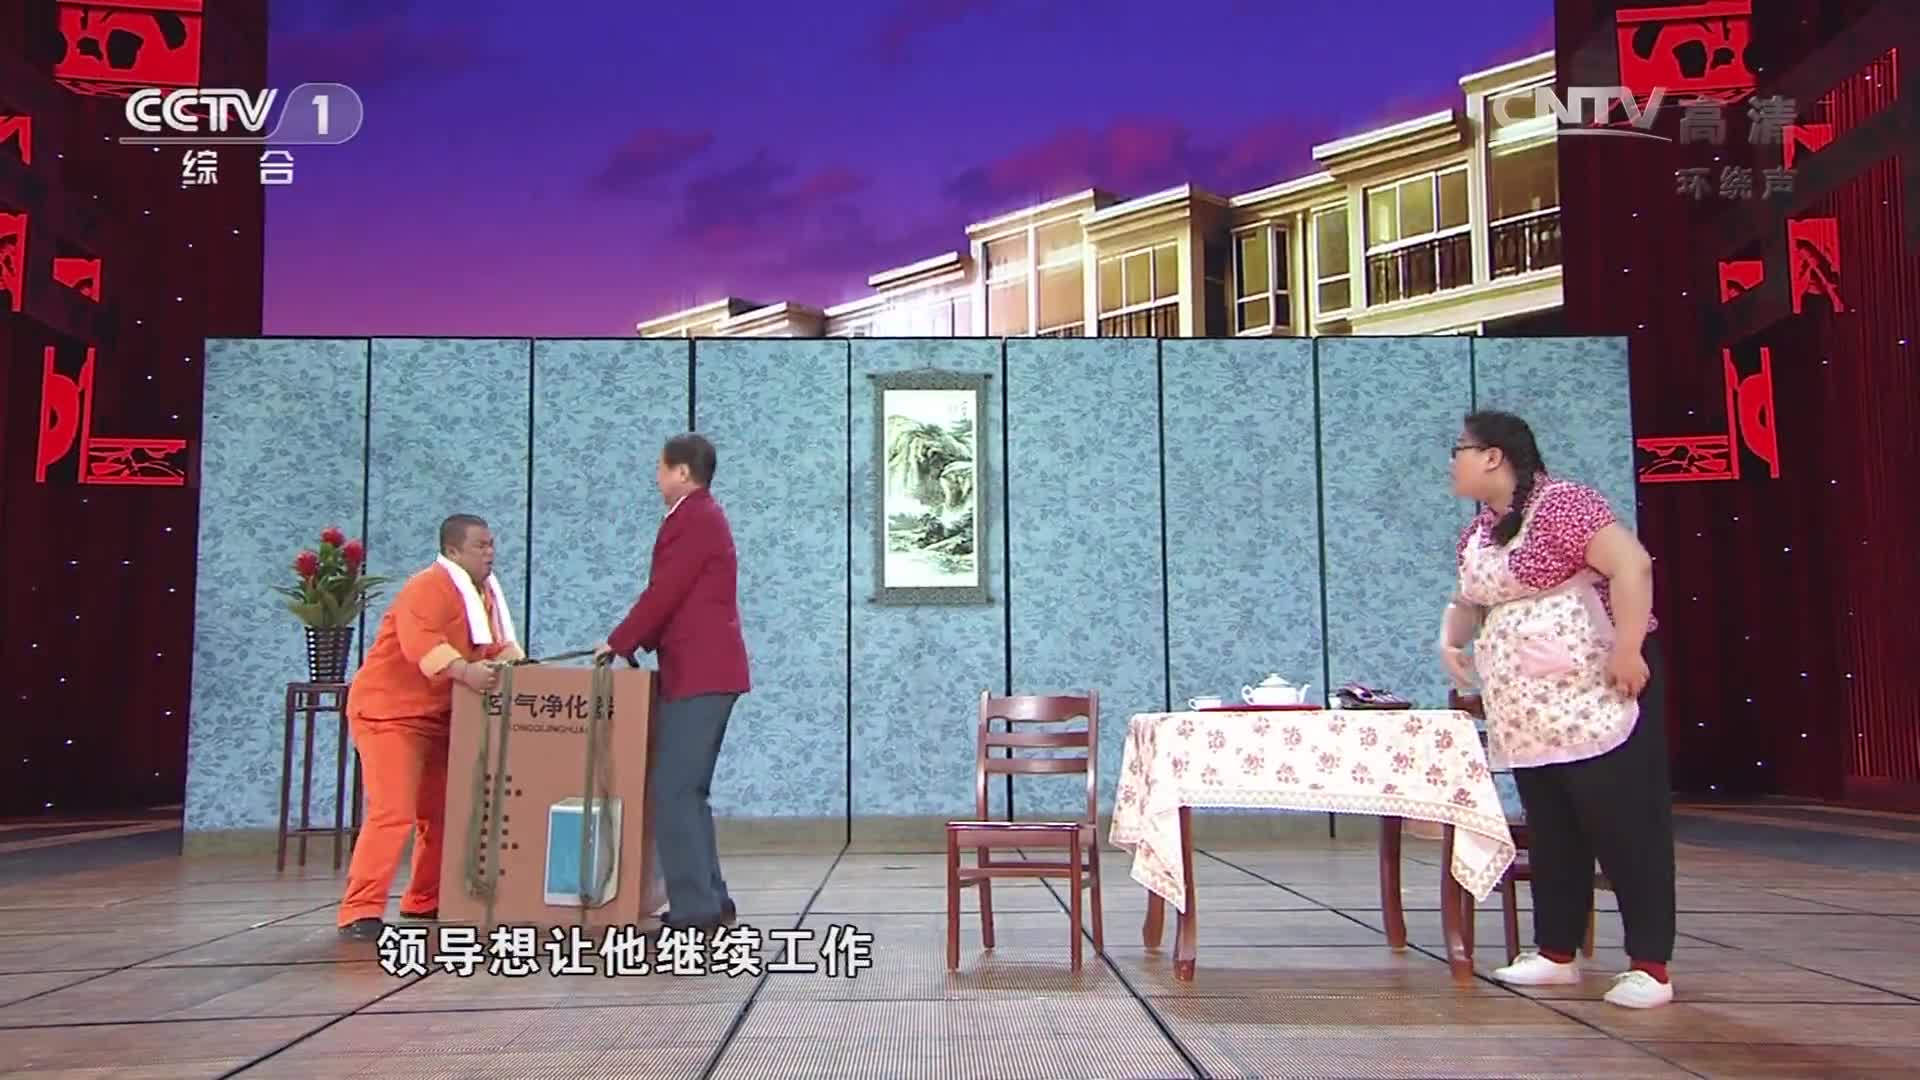 「2014央视春晚」小品《我就这么个人》表演:冯巩 曹随风 蒋诗萌